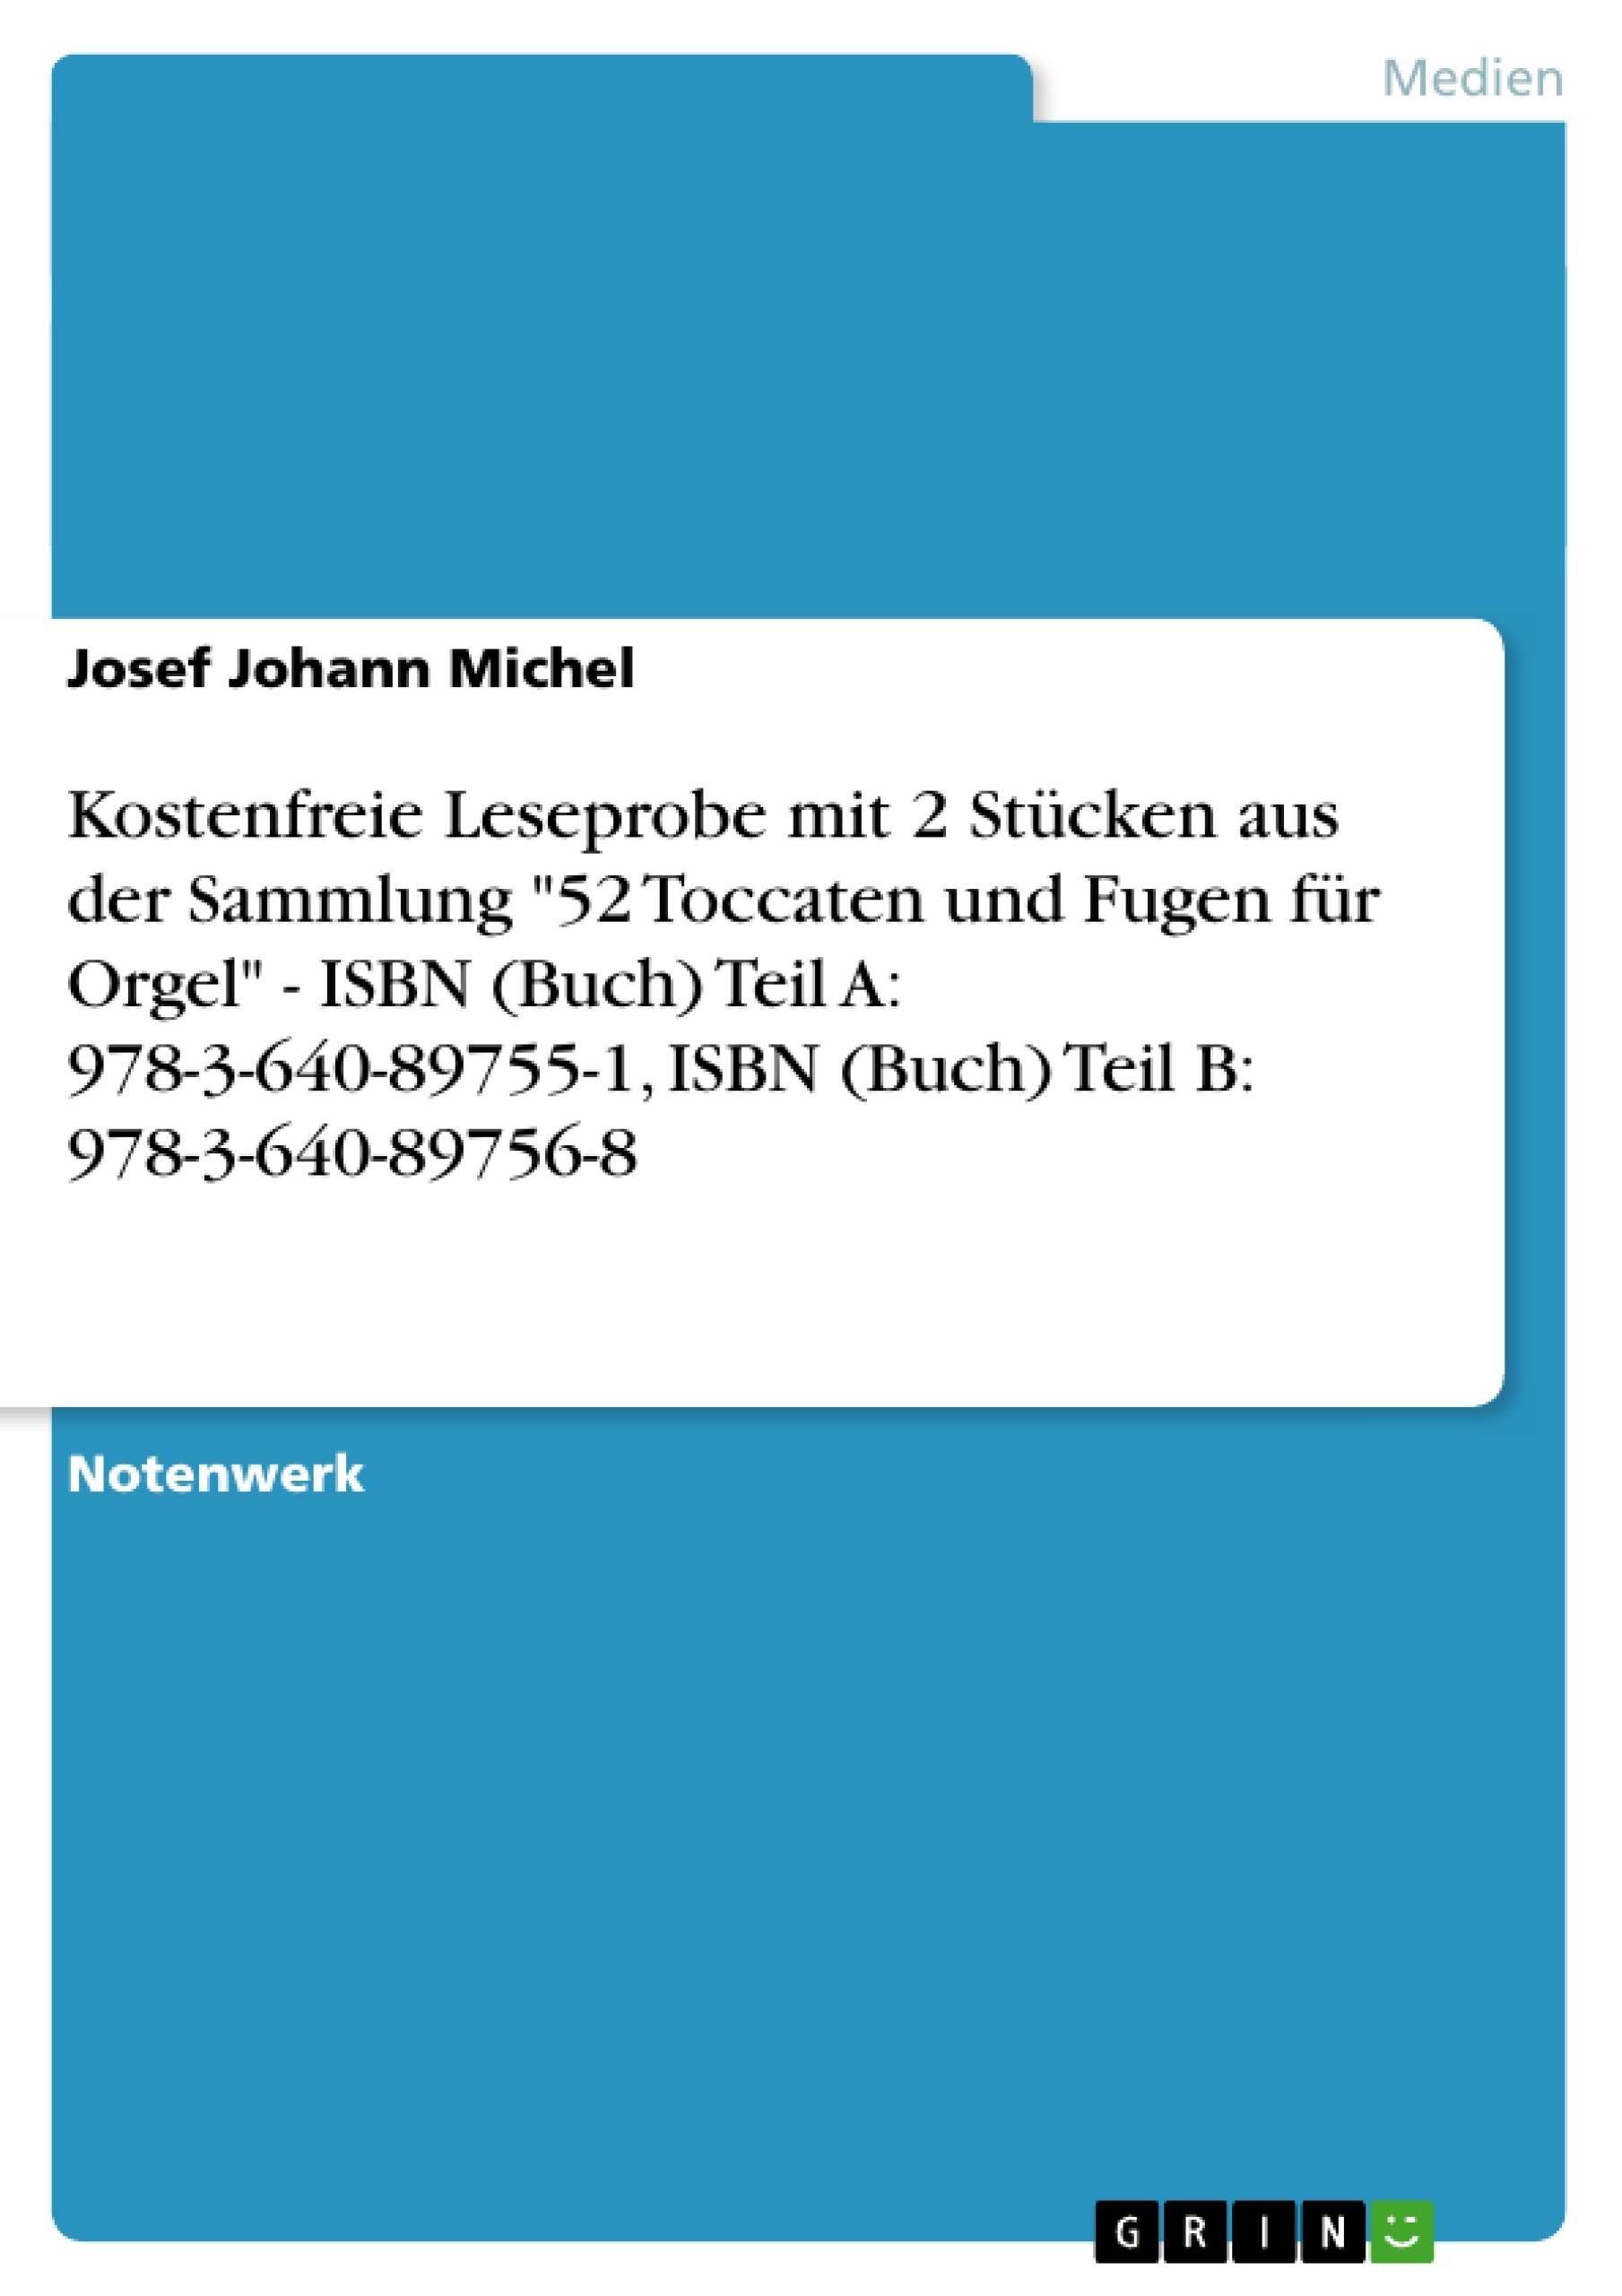 Titre: Kostenfreie Leseprobe mit 2 Stücken aus der Sammlung "52 Toccaten und Fugen für Orgel" - ISBN (Buch) Teil A: 978-3-640-89755-1, ISBN (Buch) Teil B: 978-3-640-89756-8